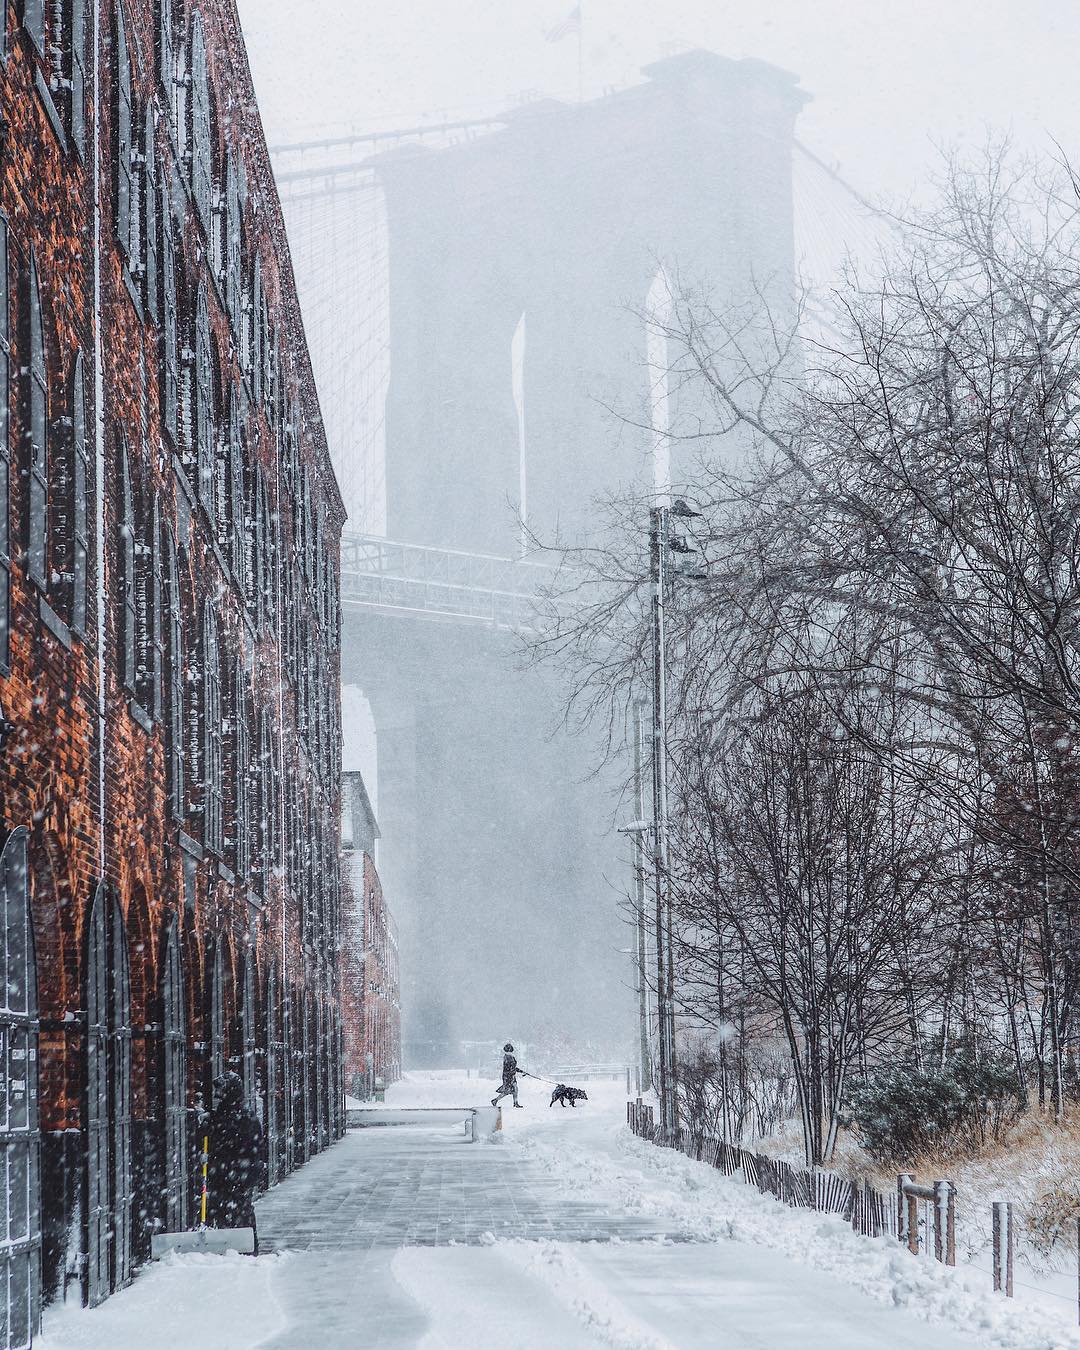 Потрясающие уличные снимки Нью-Йорка от Джейсона Ли